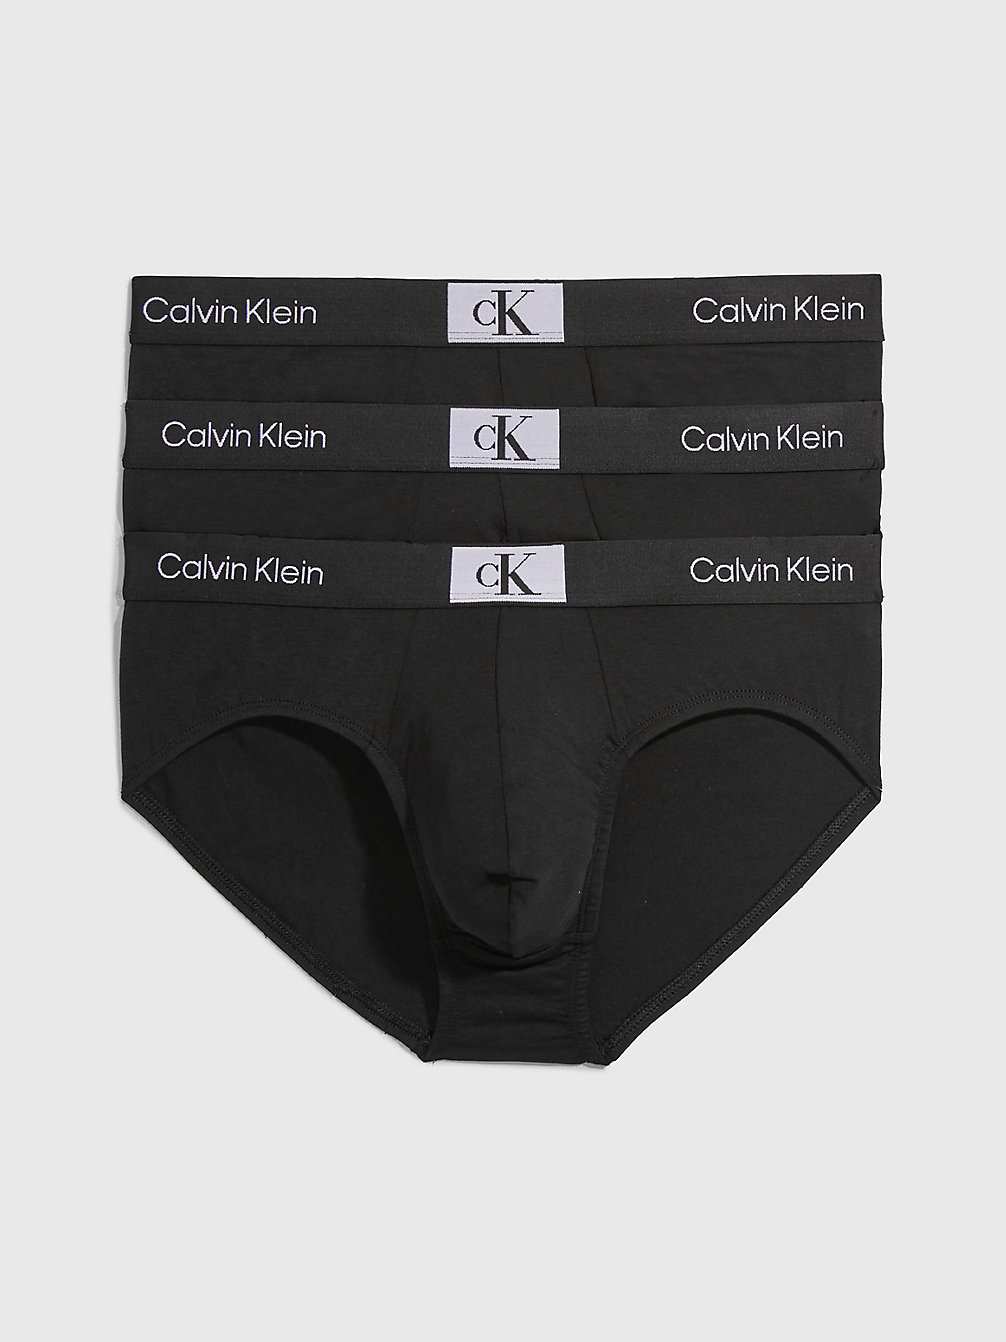 BLACK/ BLACK/ BLACK 3-Pack Slips - Ck96 undefined heren Calvin Klein